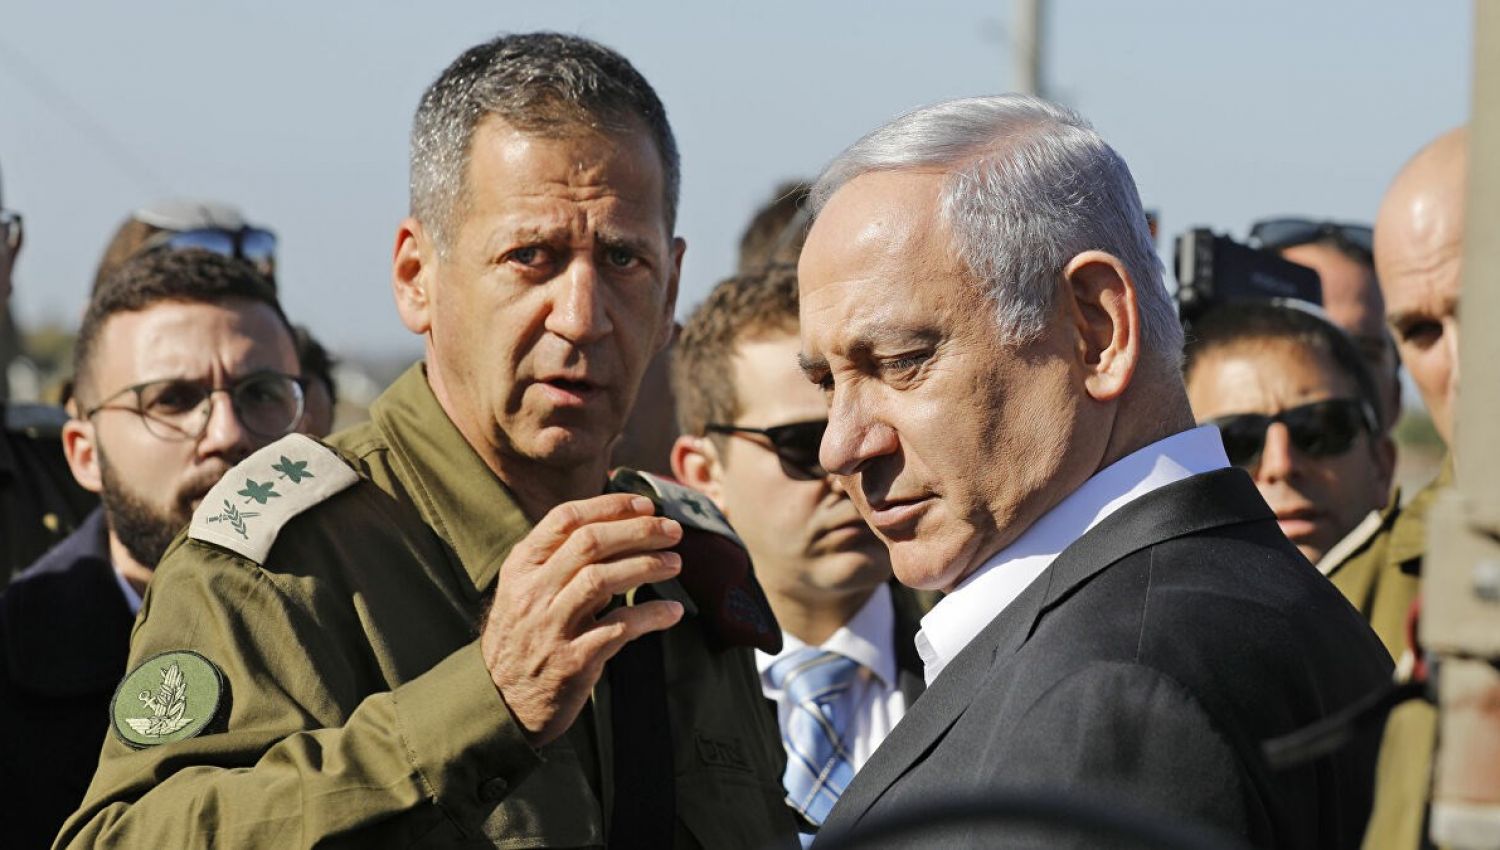 انقسام بين المستويين العسكري والسياسي وتصدع في المجتمع الاسرائيلي